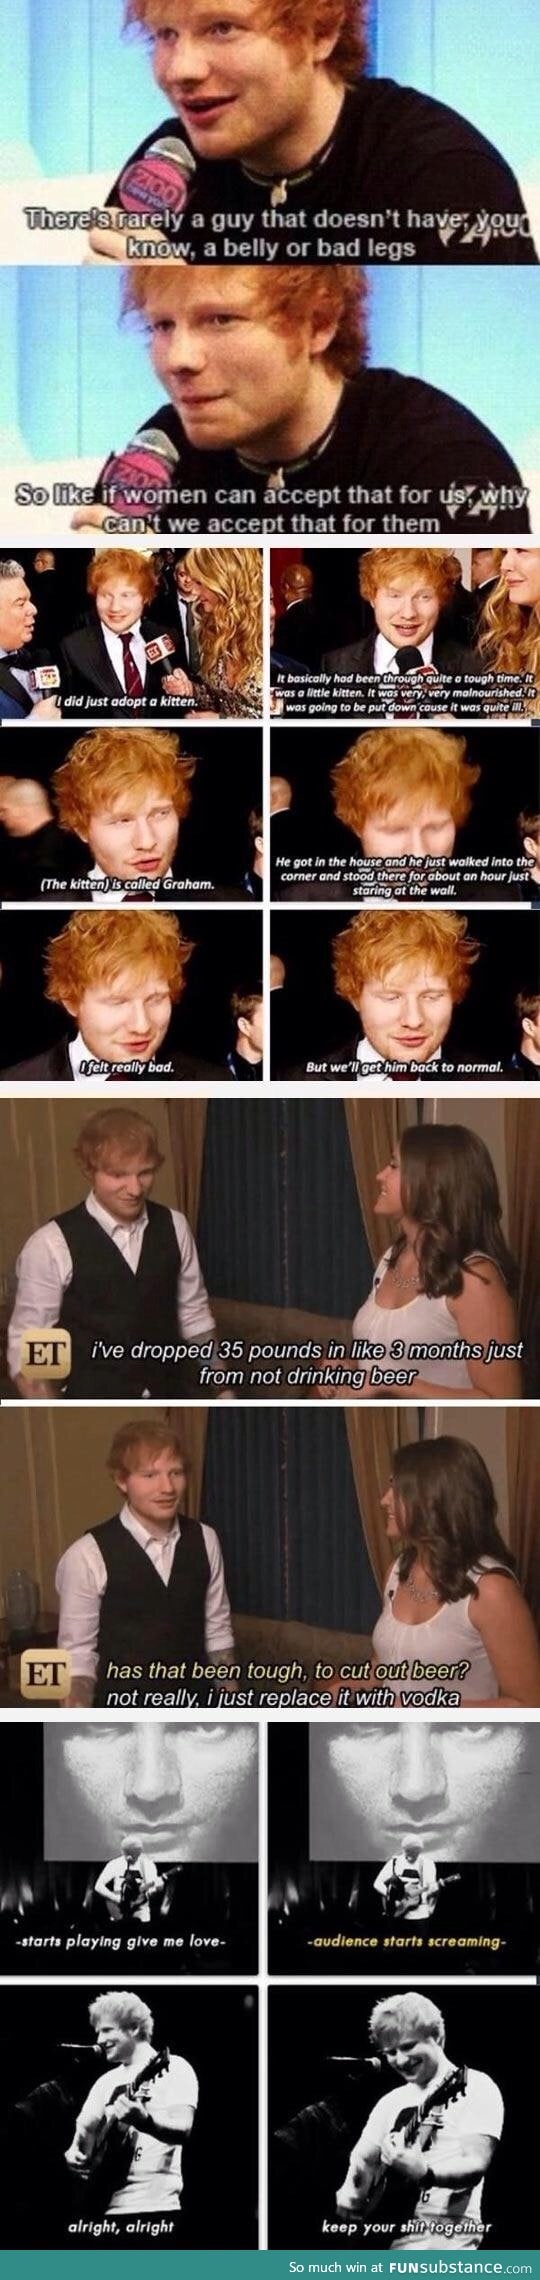 Ed Sheeran isn't appreciated enough